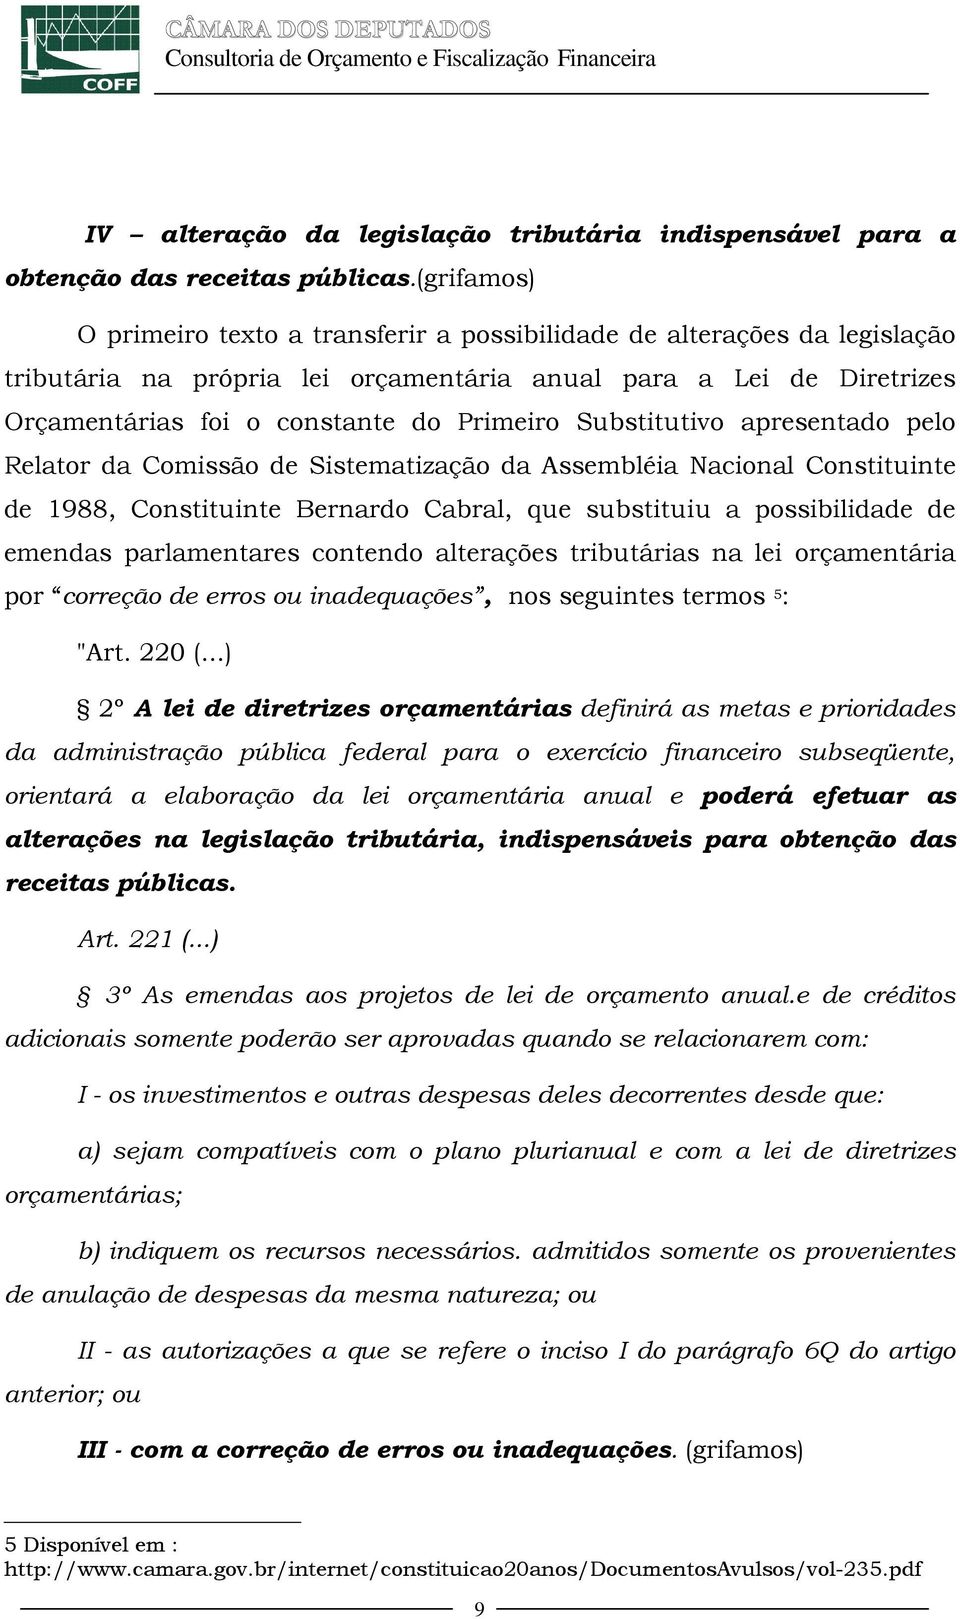 Substitutivo apresentado pelo Relator da Comissão de Sistematização da Assembléia Nacional Constituinte de 1988, Constituinte Bernardo Cabral, que substituiu a possibilidade de emendas parlamentares